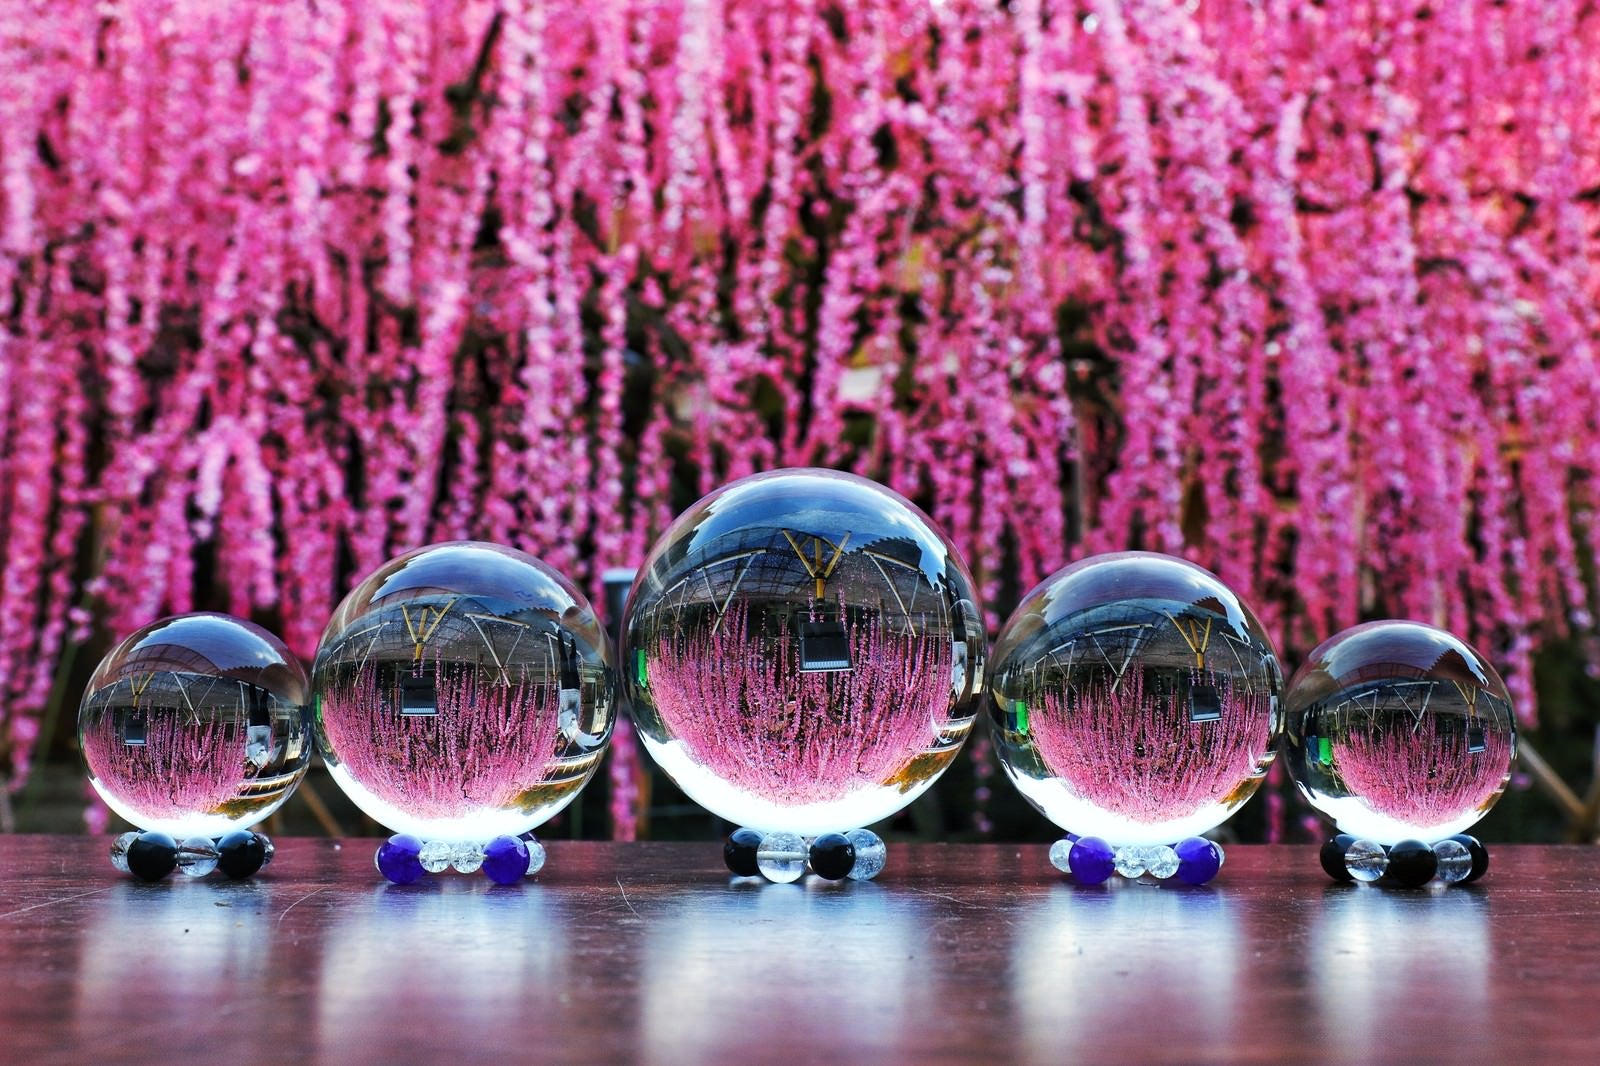 「枝垂れ梅と並ぶガラス玉」の写真